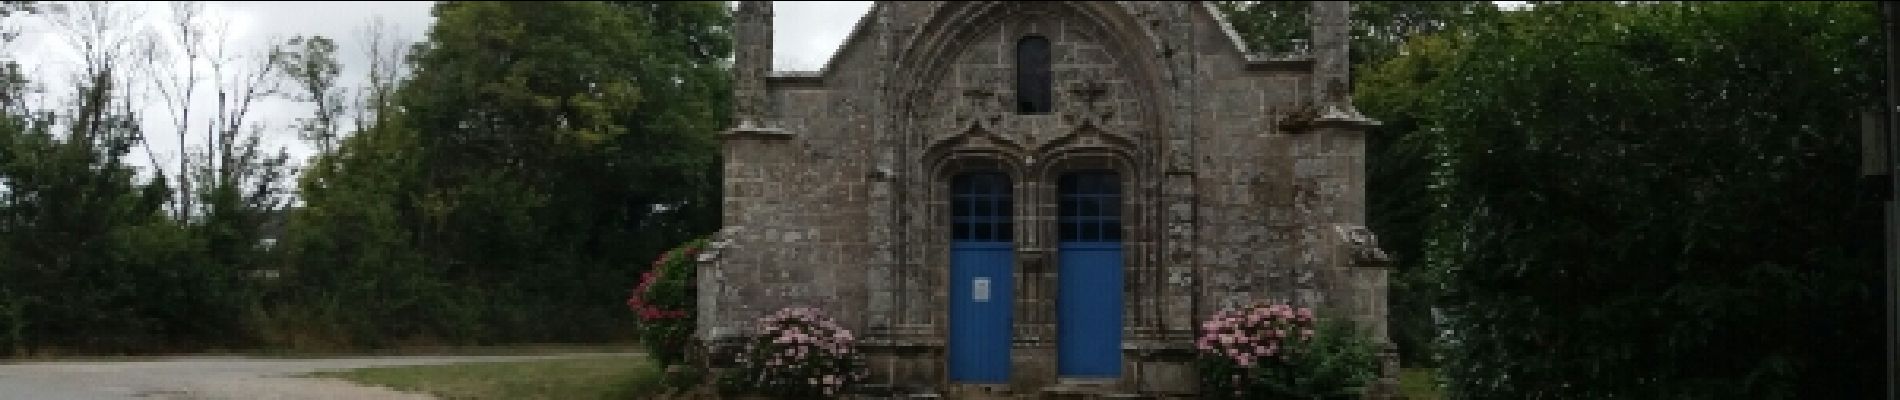 Point of interest Ambon - Chapelle de Brouel - Photo